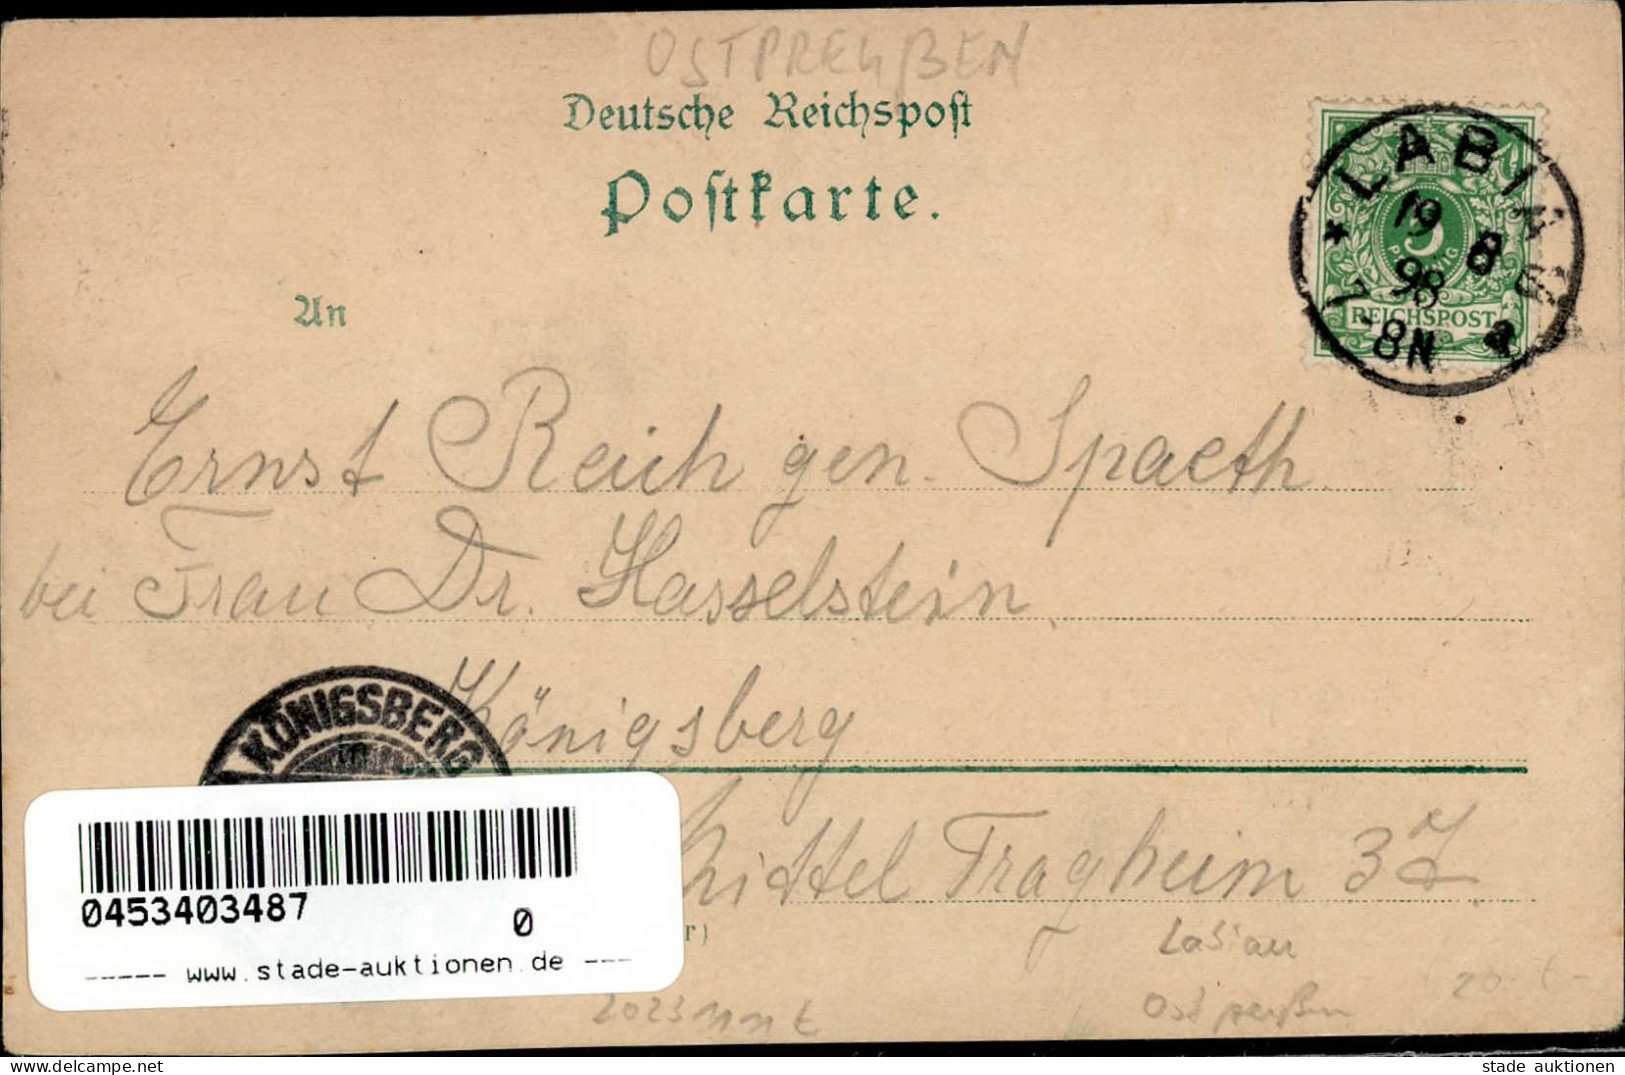 LABIAU,Ostpr. - Litho 1898 - Ecke Stark Gestoßen III - Russia